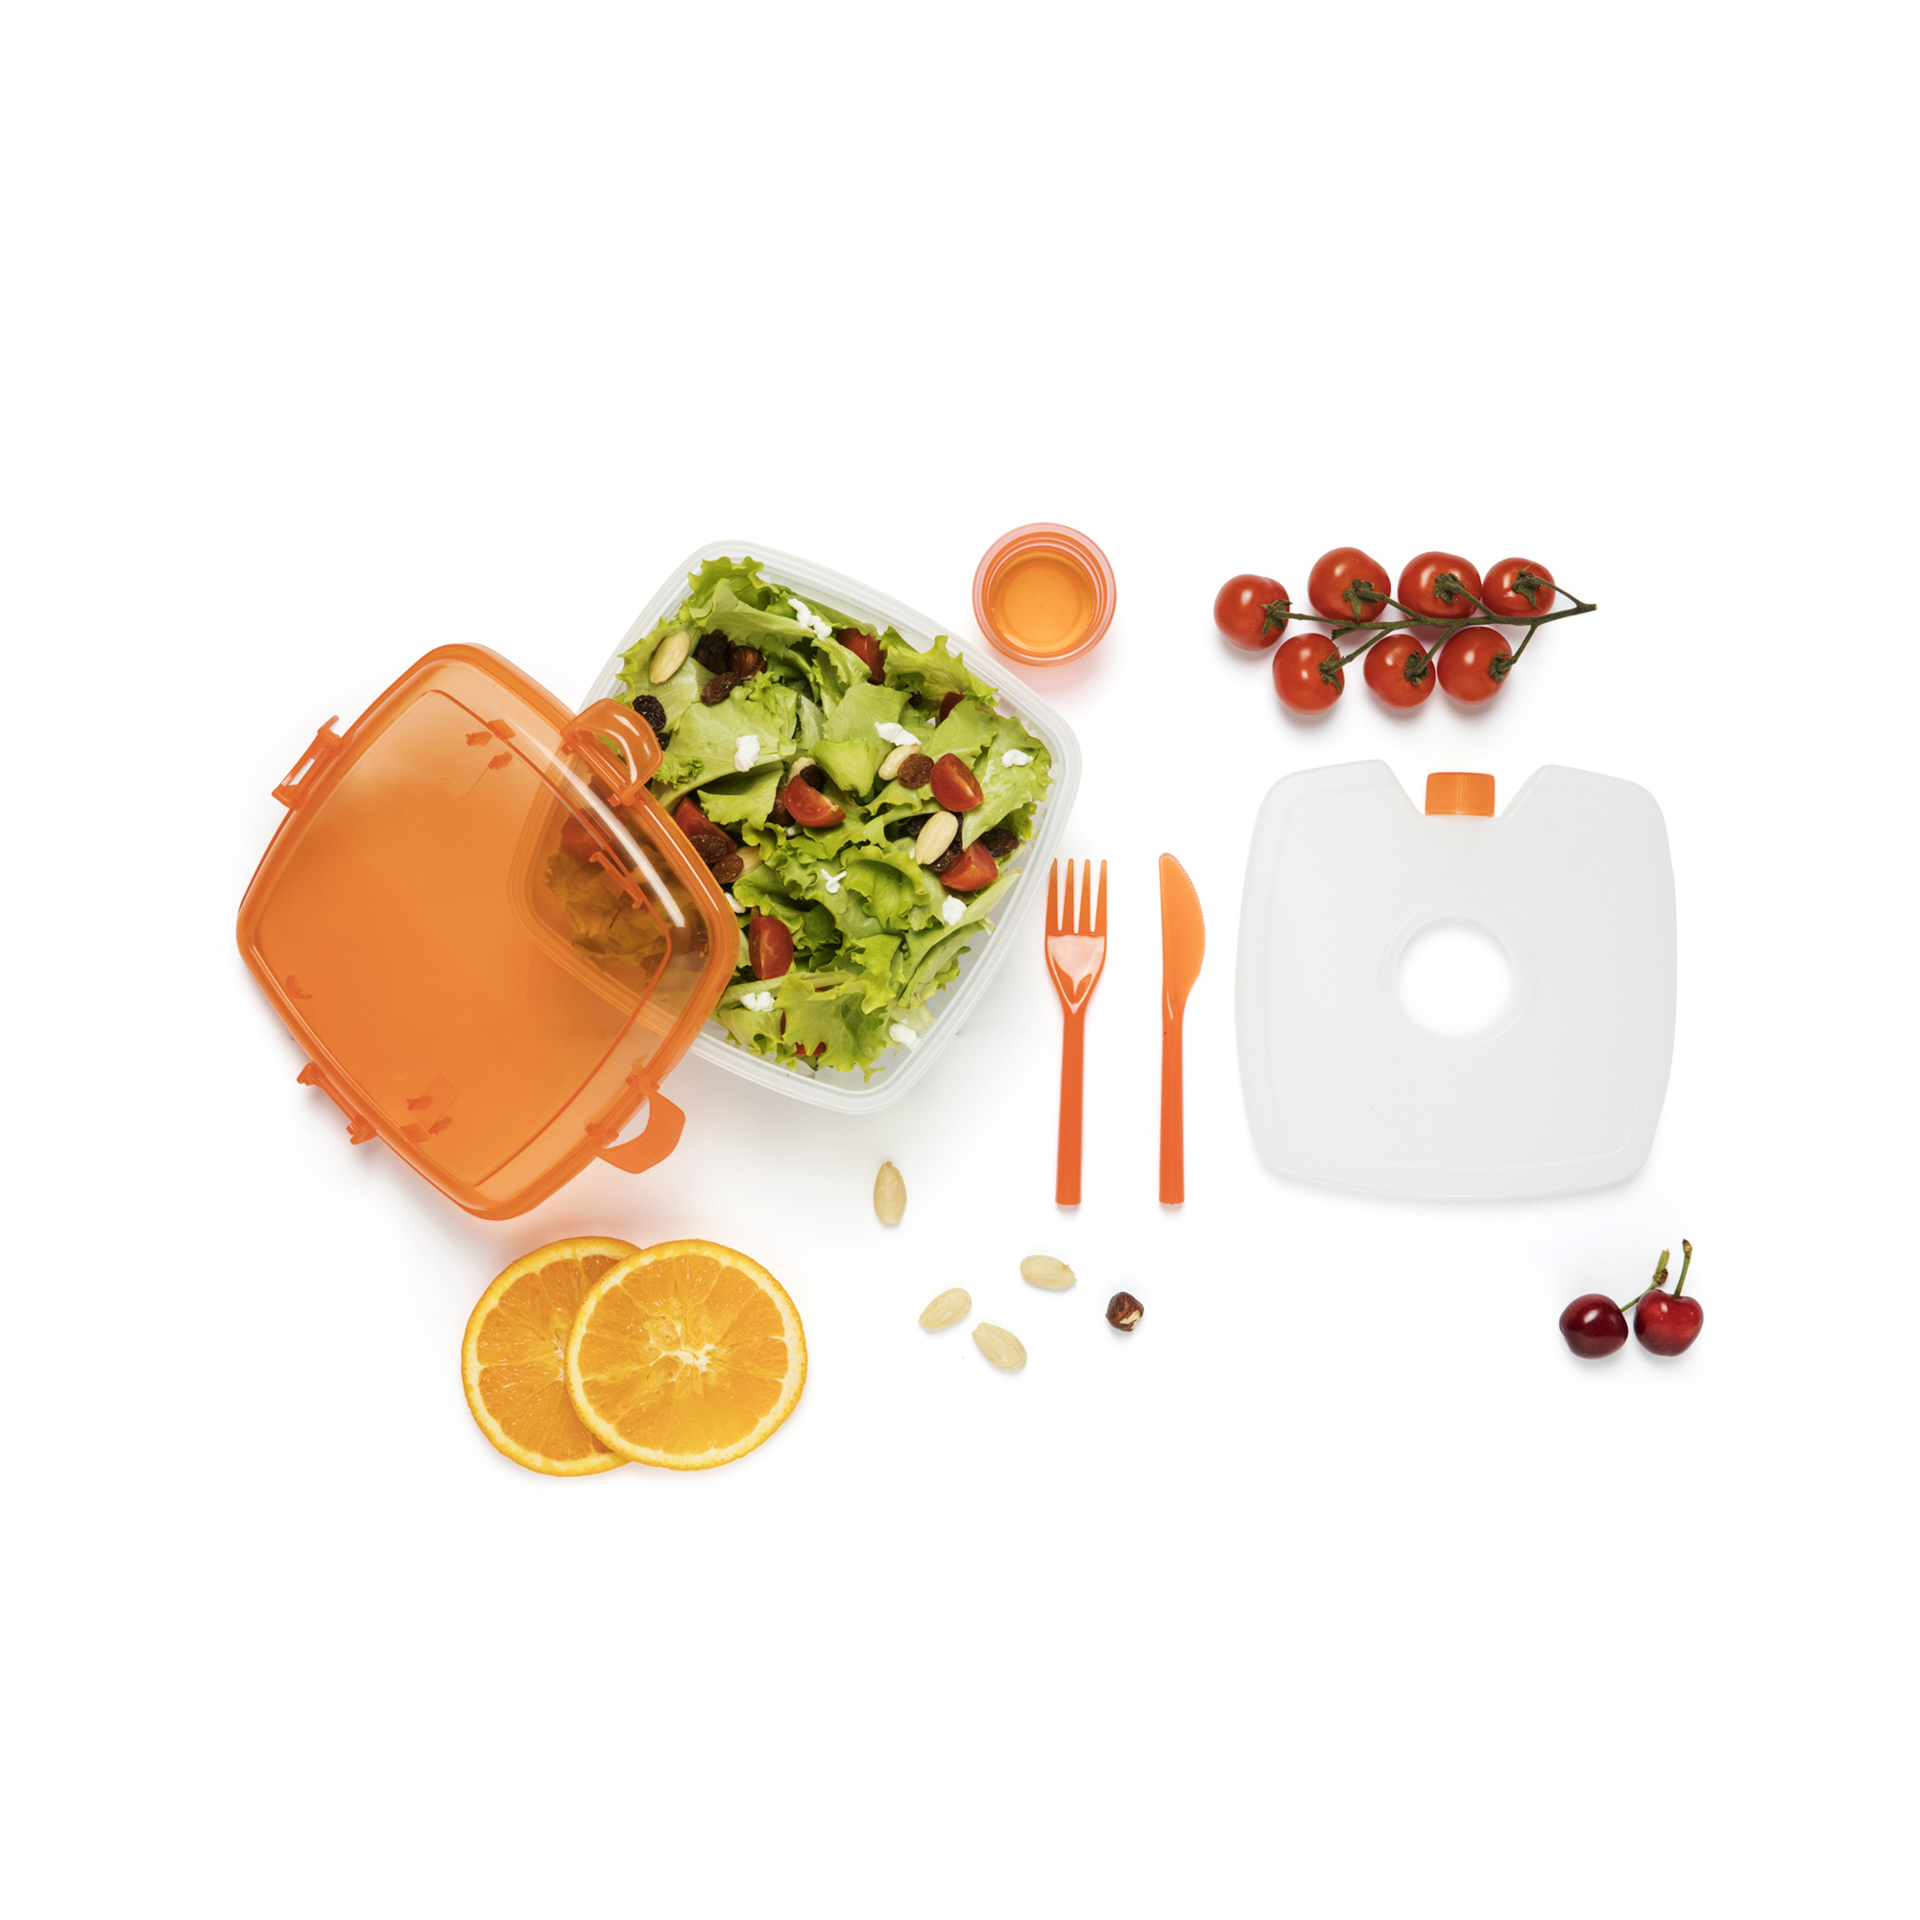 Contenitore lunch box per microonde - colore arancio